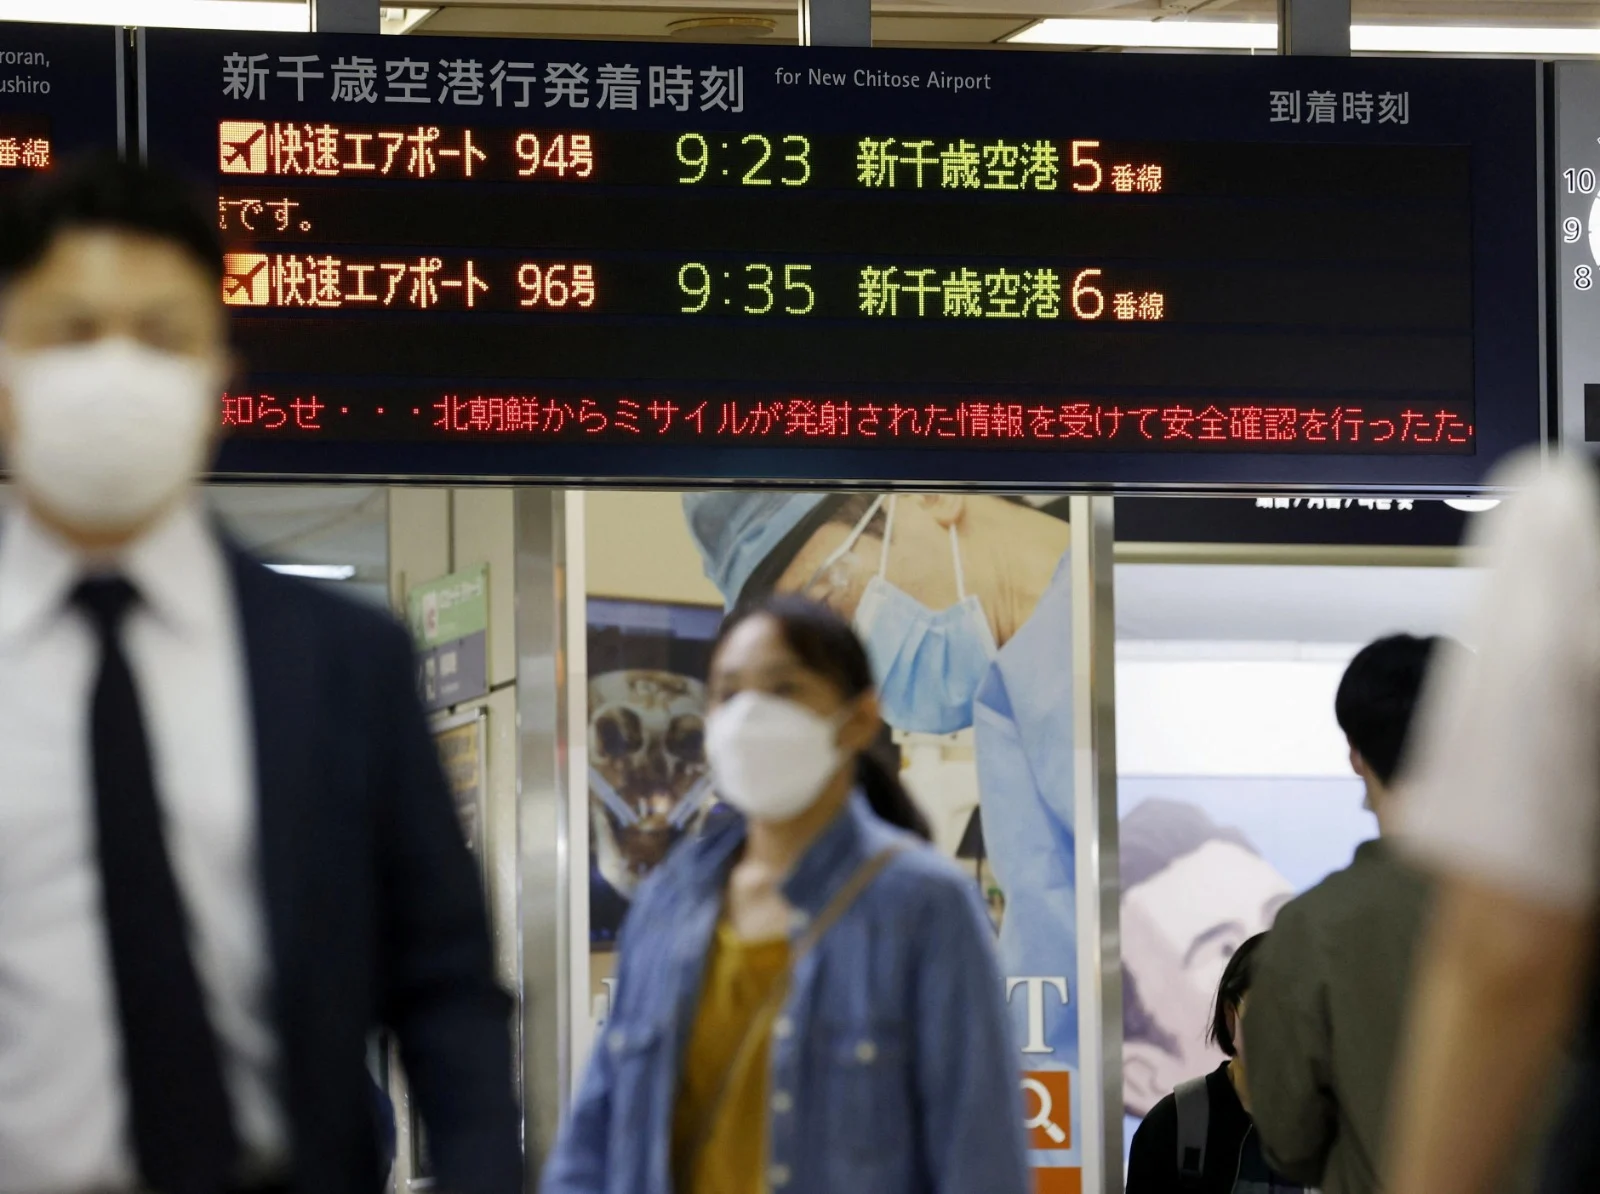 הודעת התראה ברכבת בהוקאידו הקוראת לתושבים לתפוס מחסה